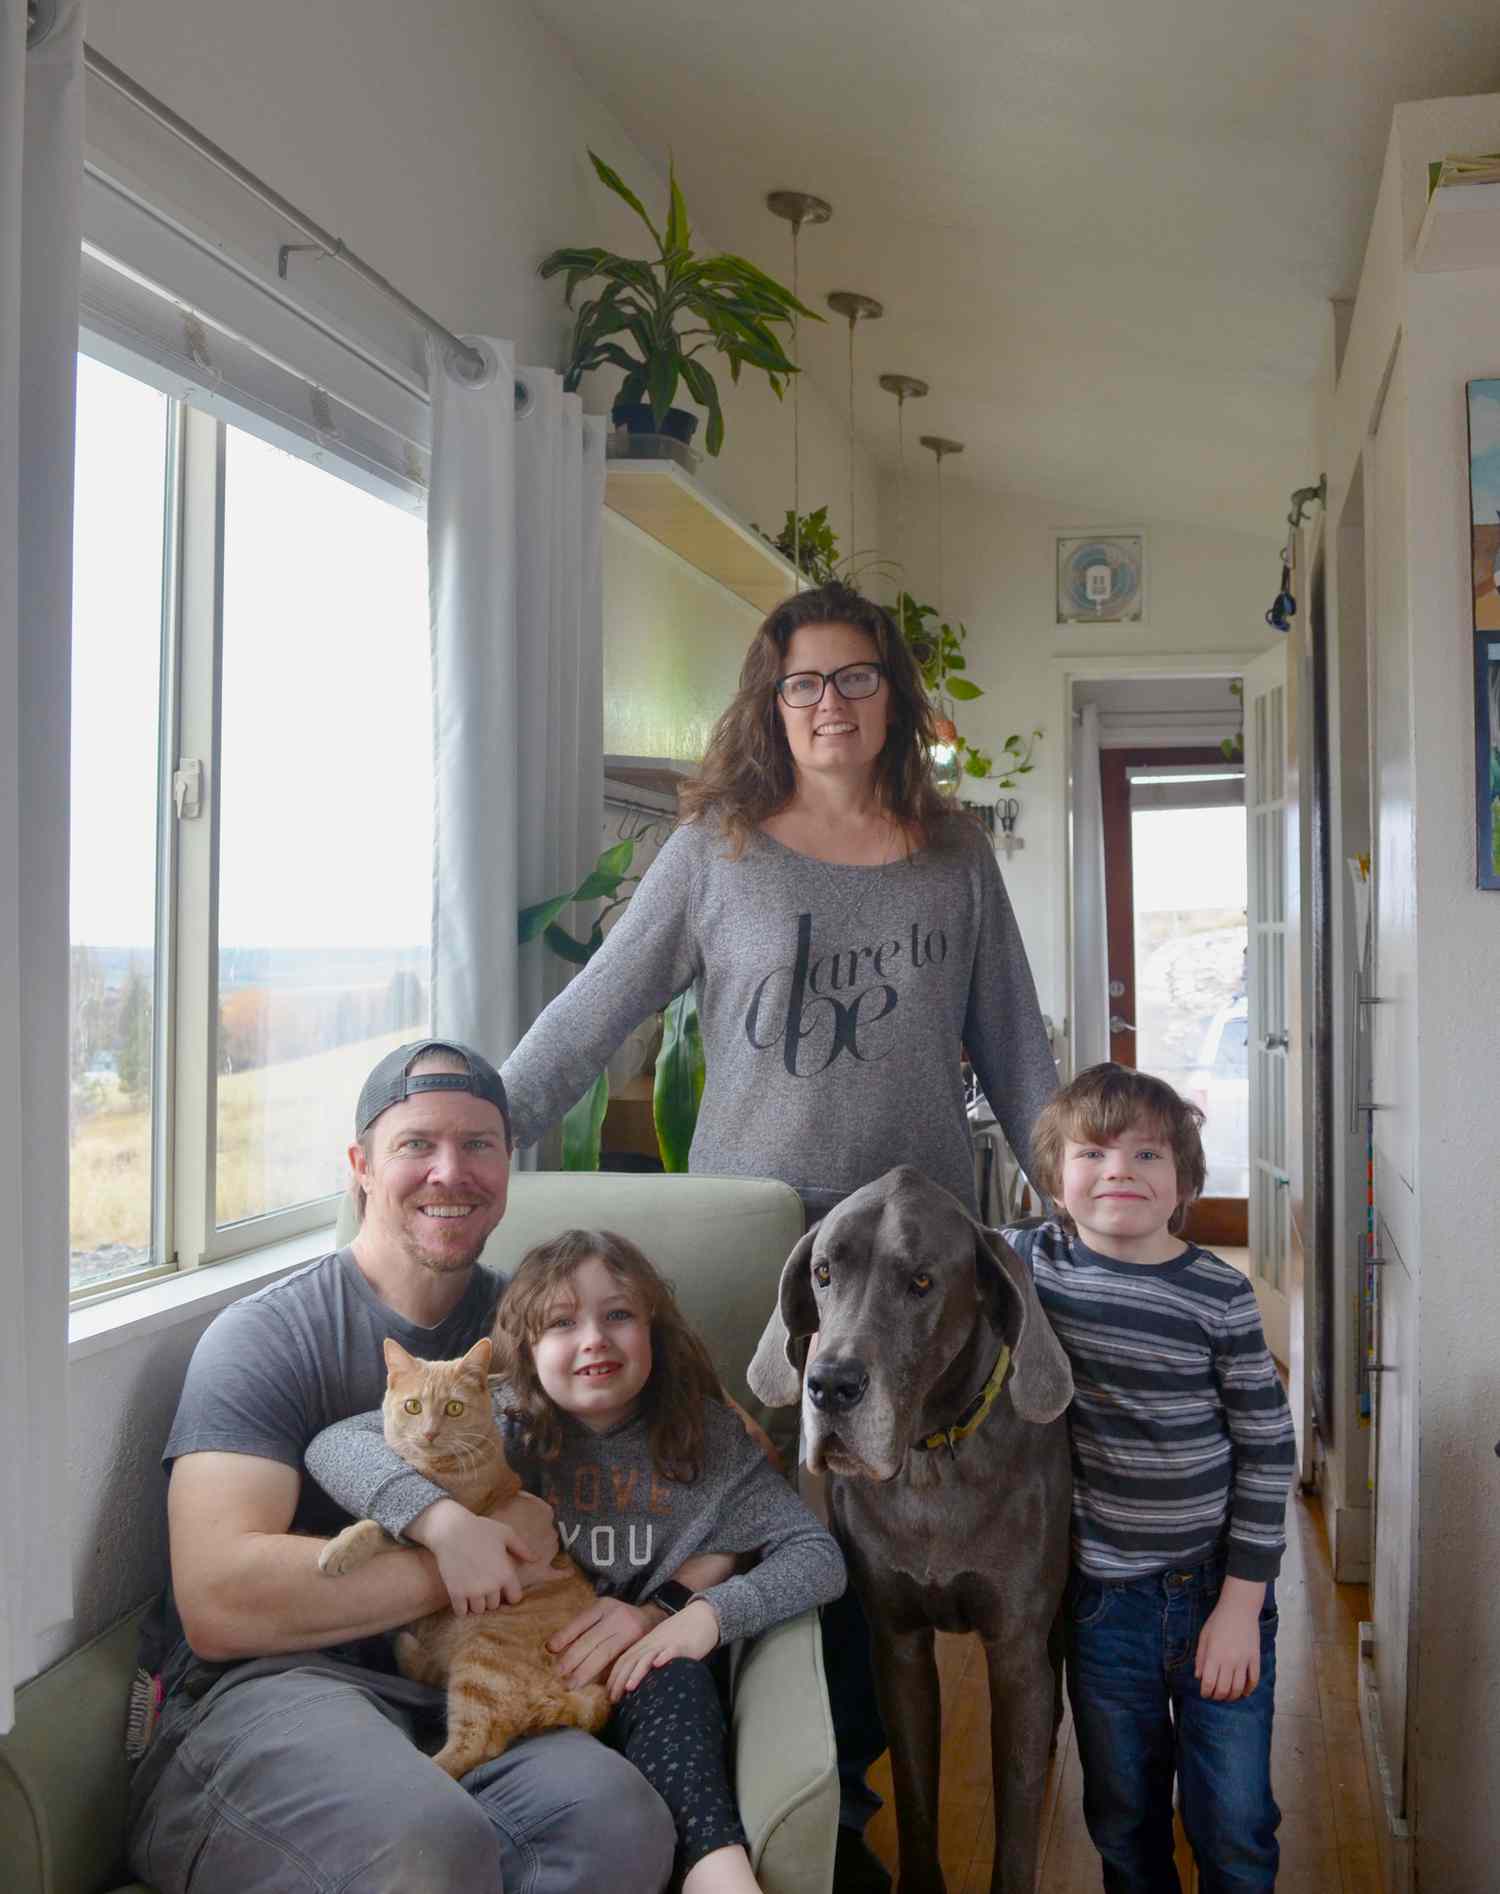 Macy Miller, 37 anos, e seu parceiro James Herndon, 41 anos, vivem e criam seus filhos Hazel, 6 anos, e Miles, 5 anos, em sua pequena casa personalizada no norte de Idaho há nove anos